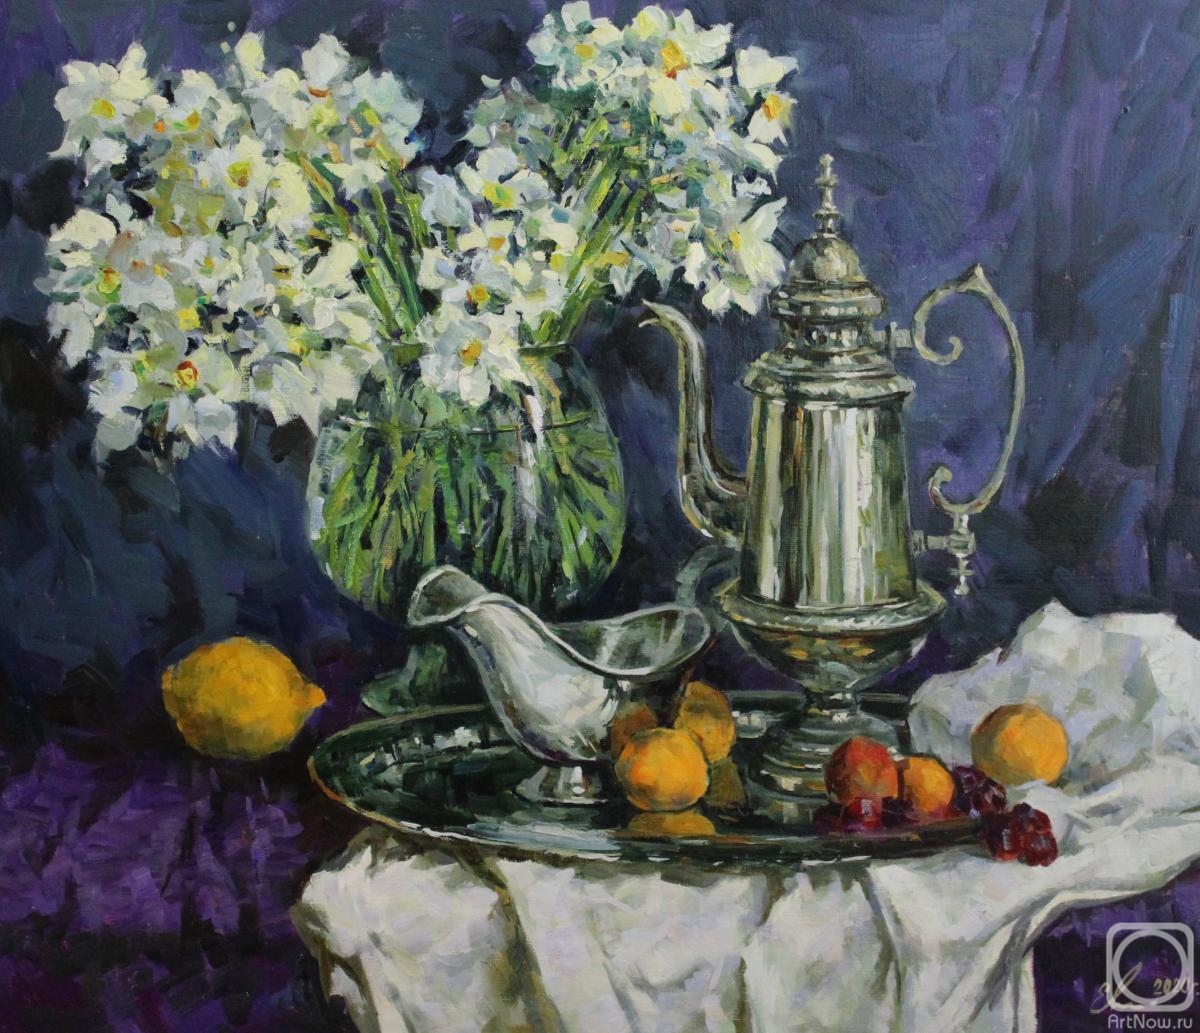 Malykh Evgeny. Daffodils